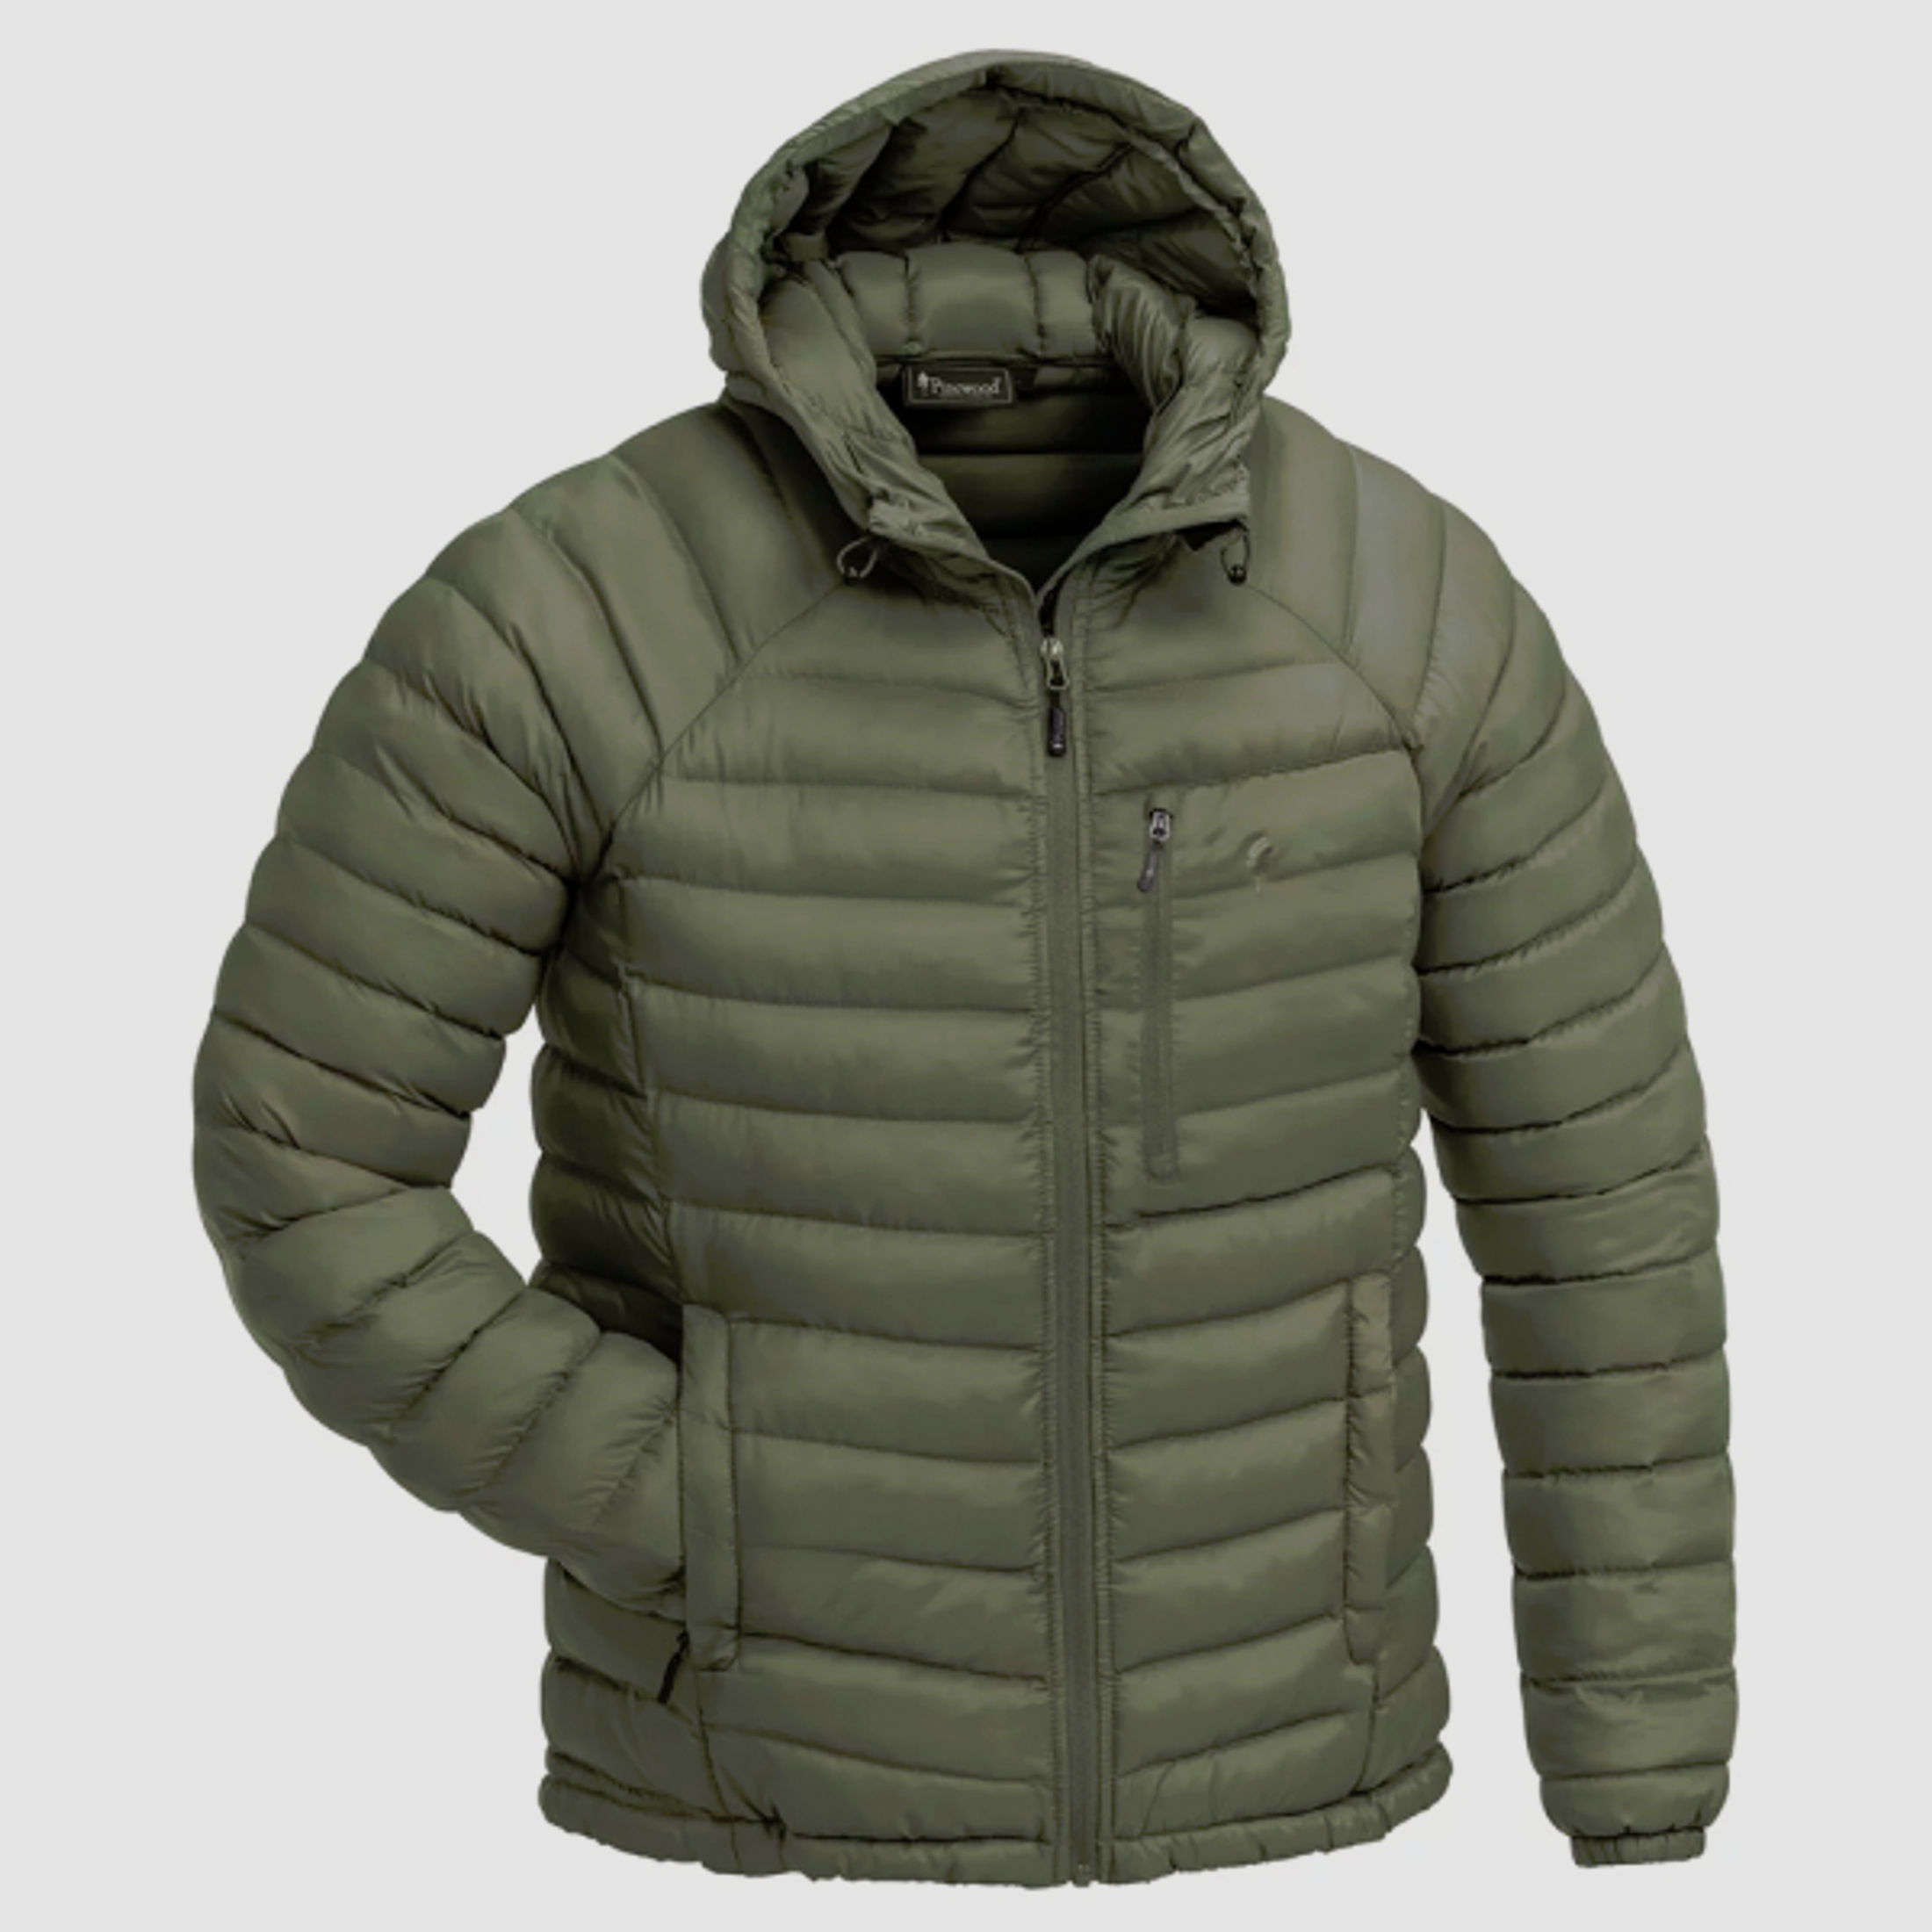 -60% PINEWOOD ABISKO Insulation Jacke 5152 winddichte sehr warme & leichte Jacke Farbe Grün Größe M